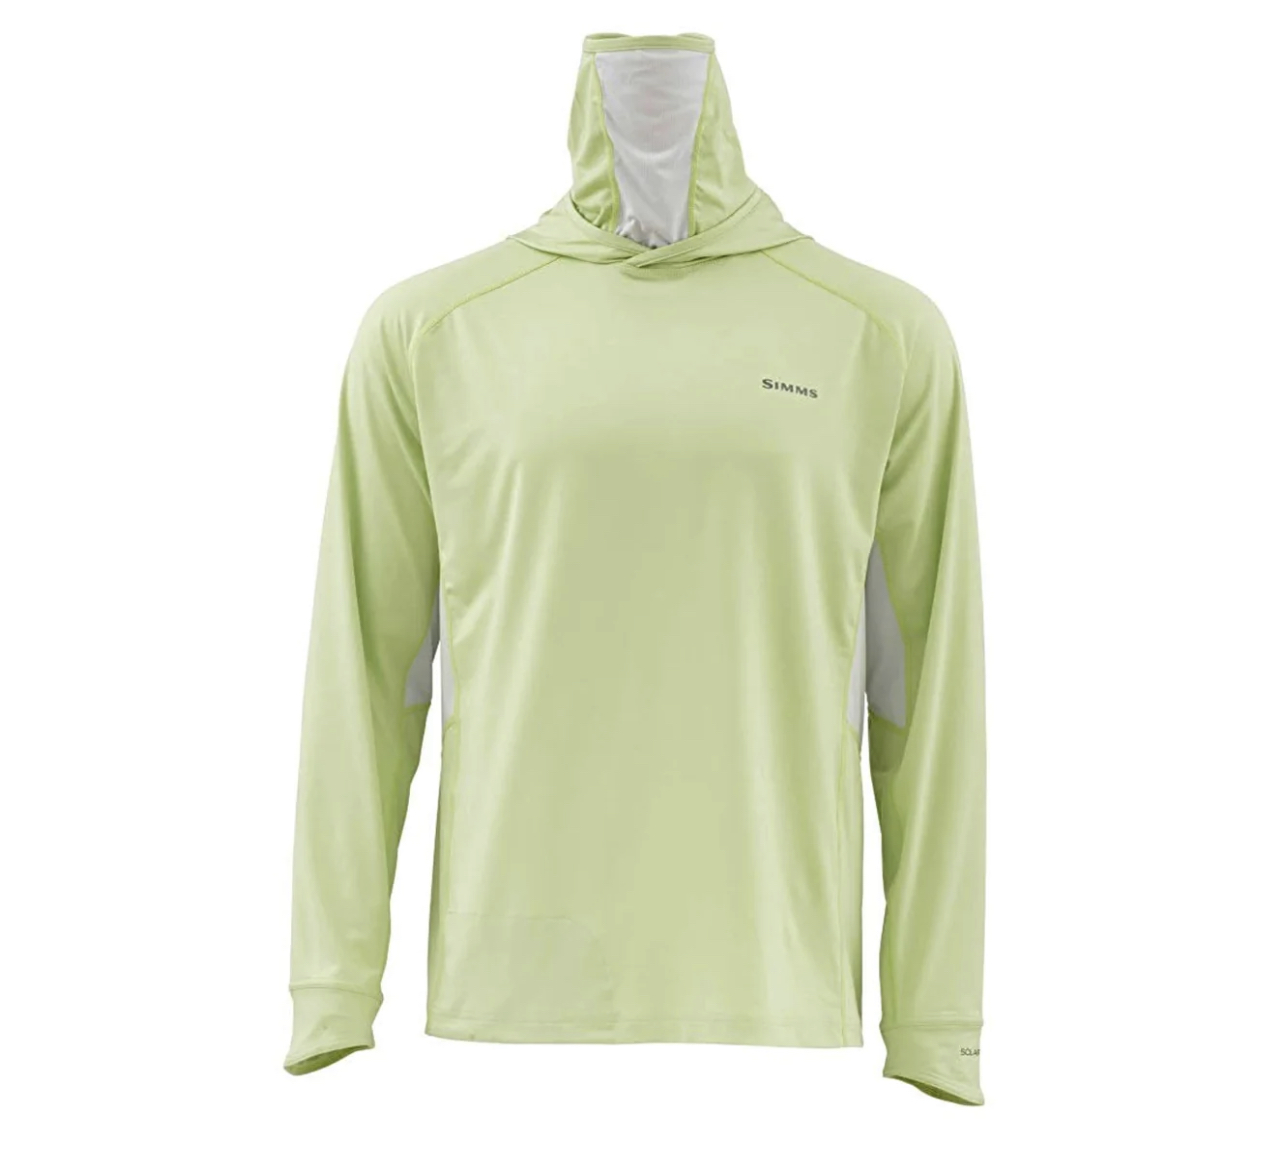 Simms M's Solarflex Armor Shirt - Light Green - XL